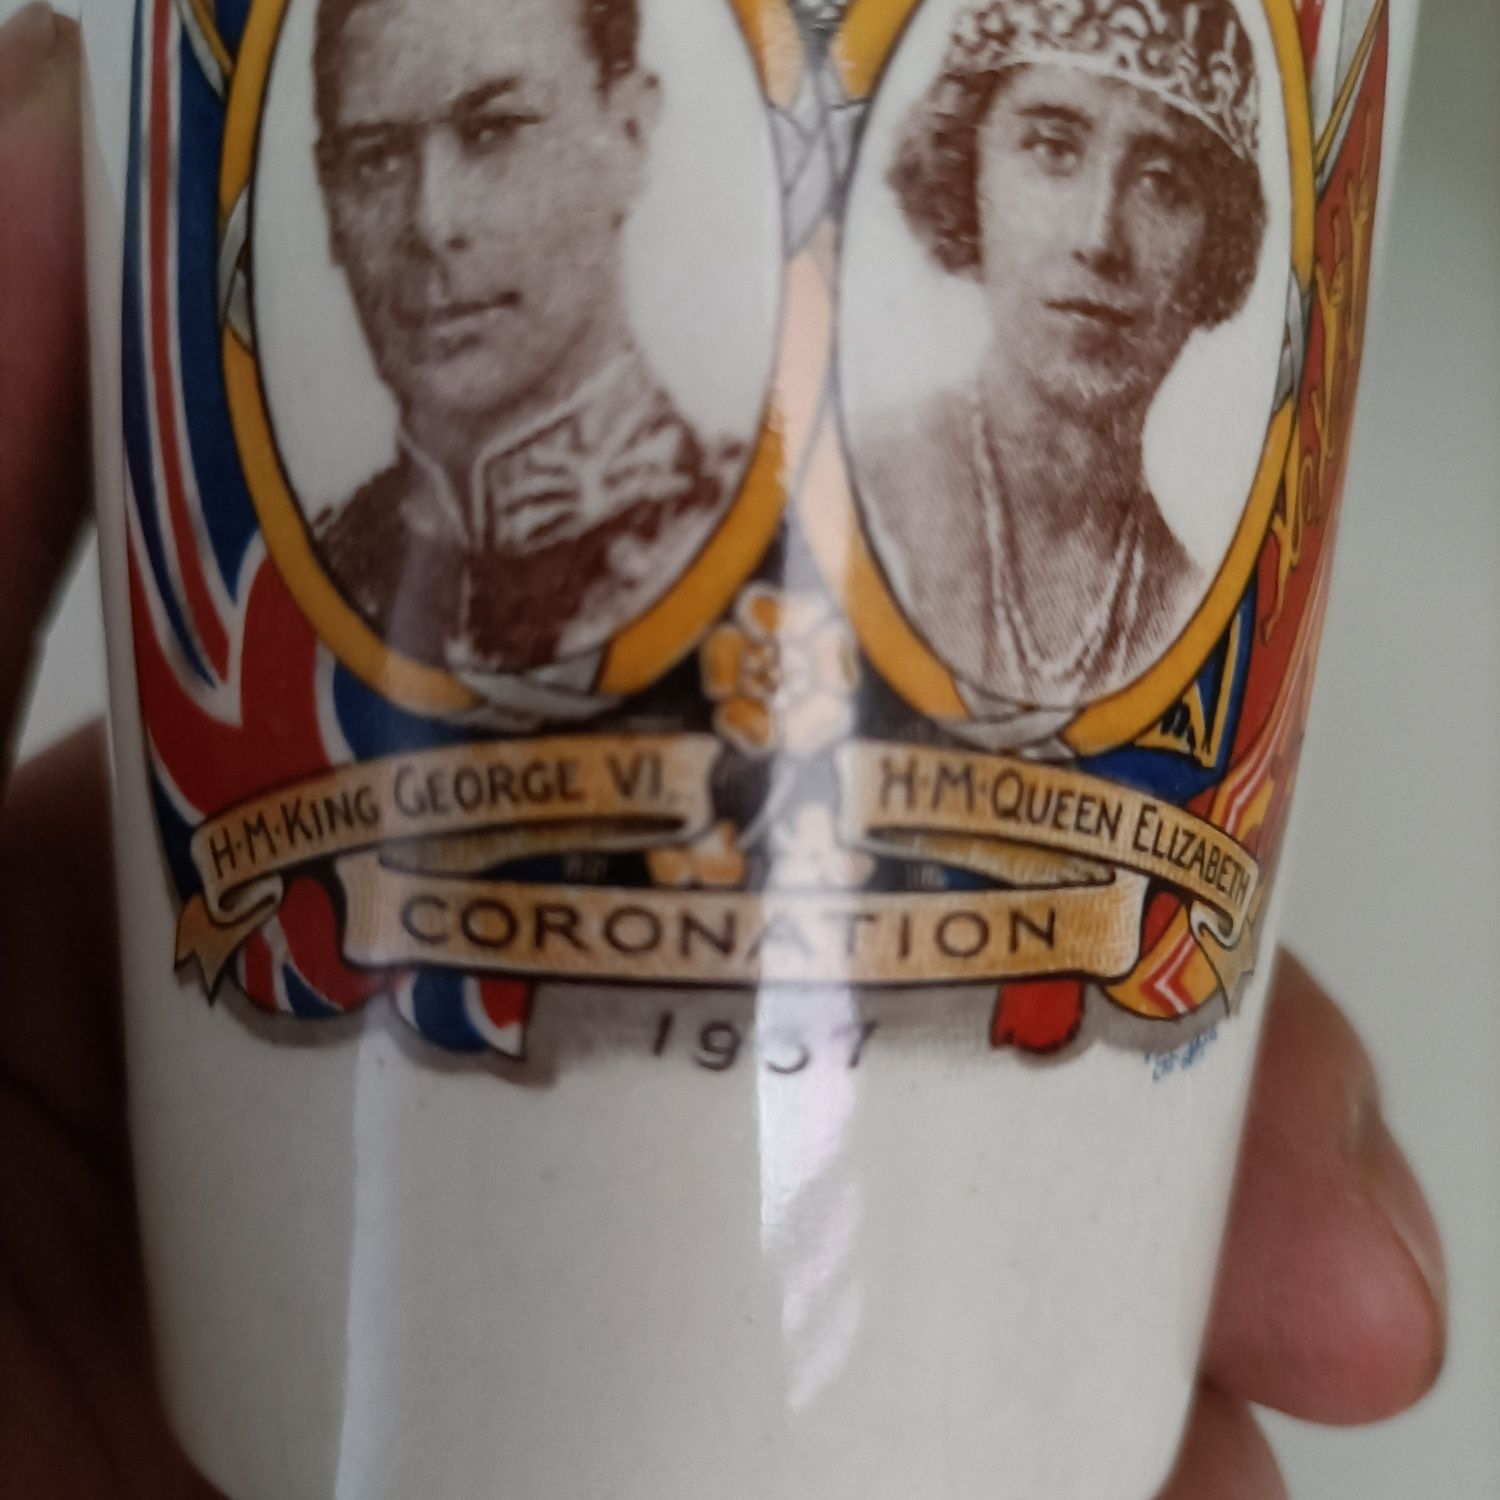 Copo comemorativo da coroação dos reis George VI e rainha Elizabeth